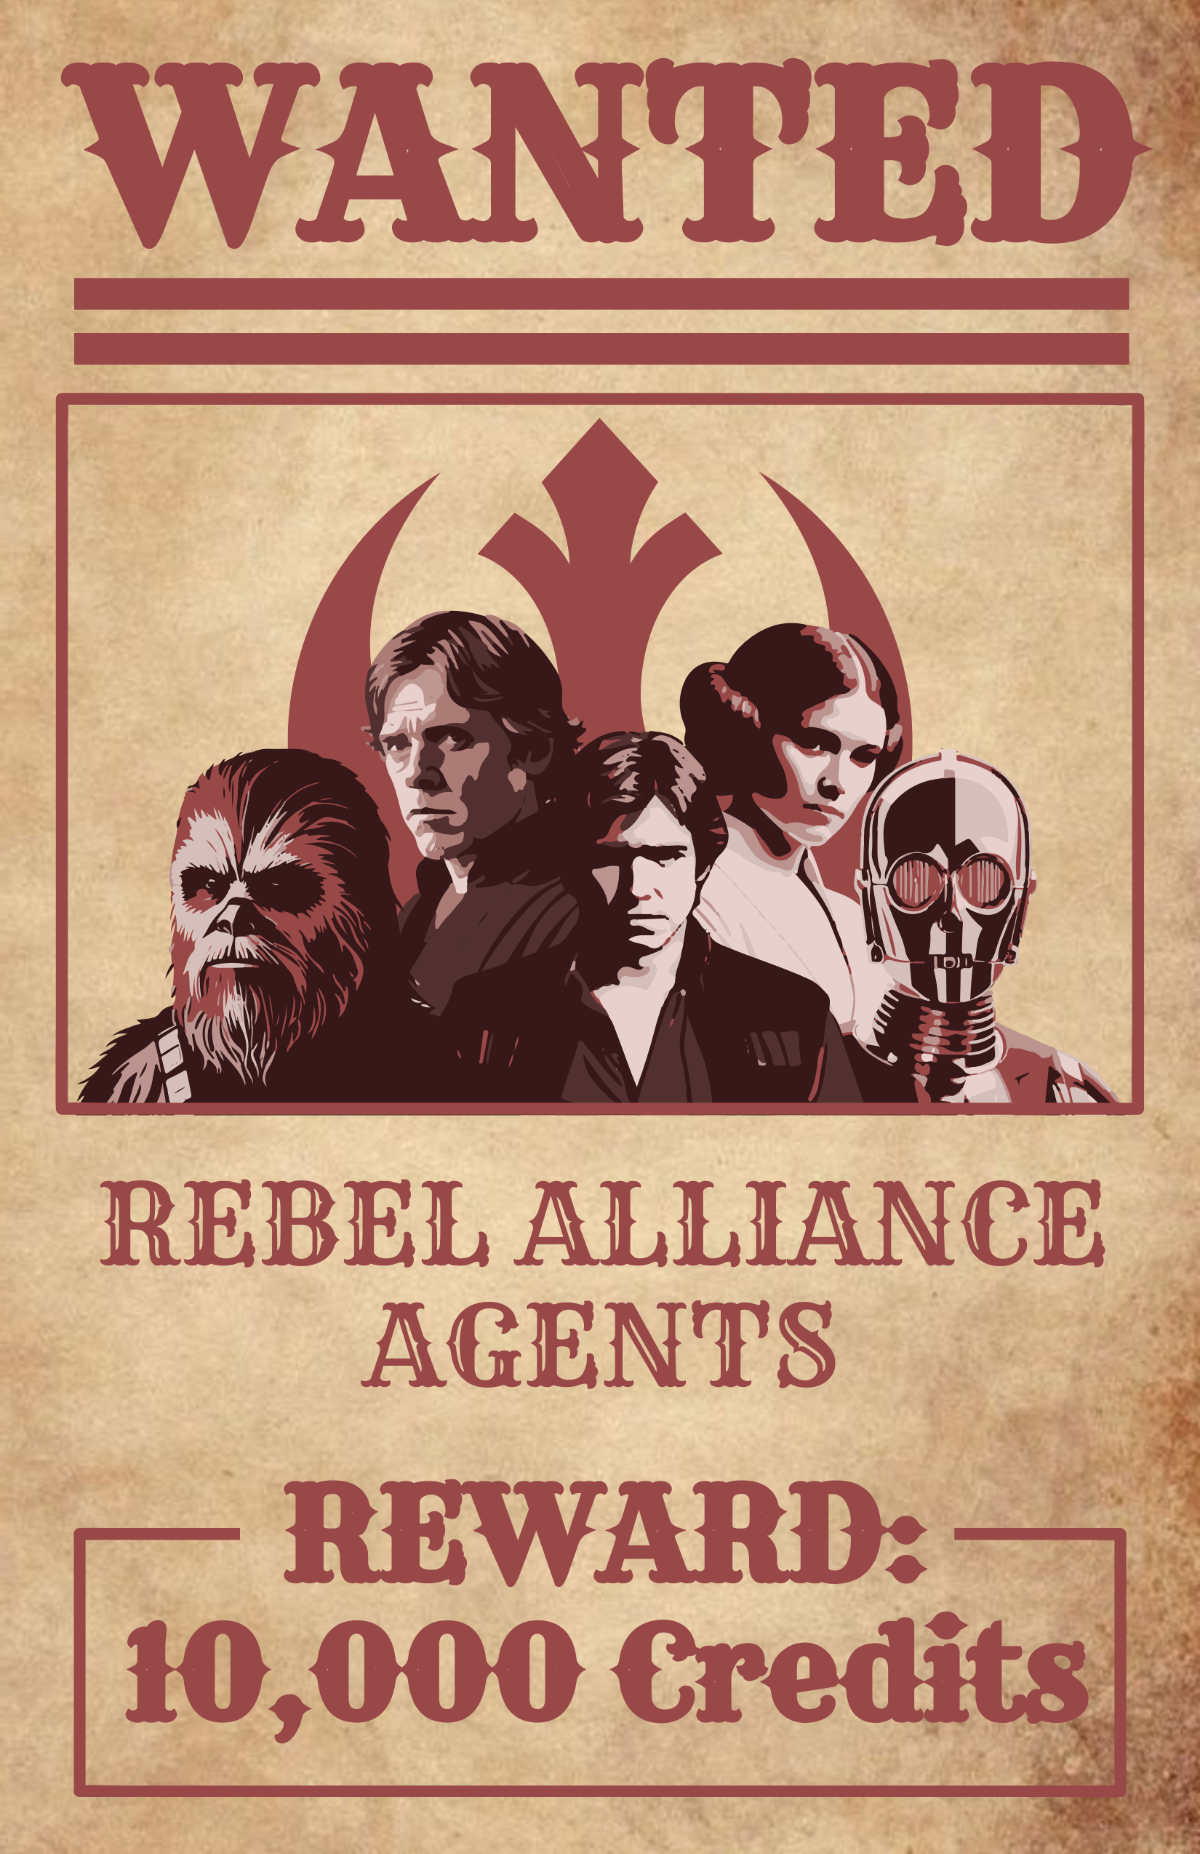 Star Wars Vintage Poster